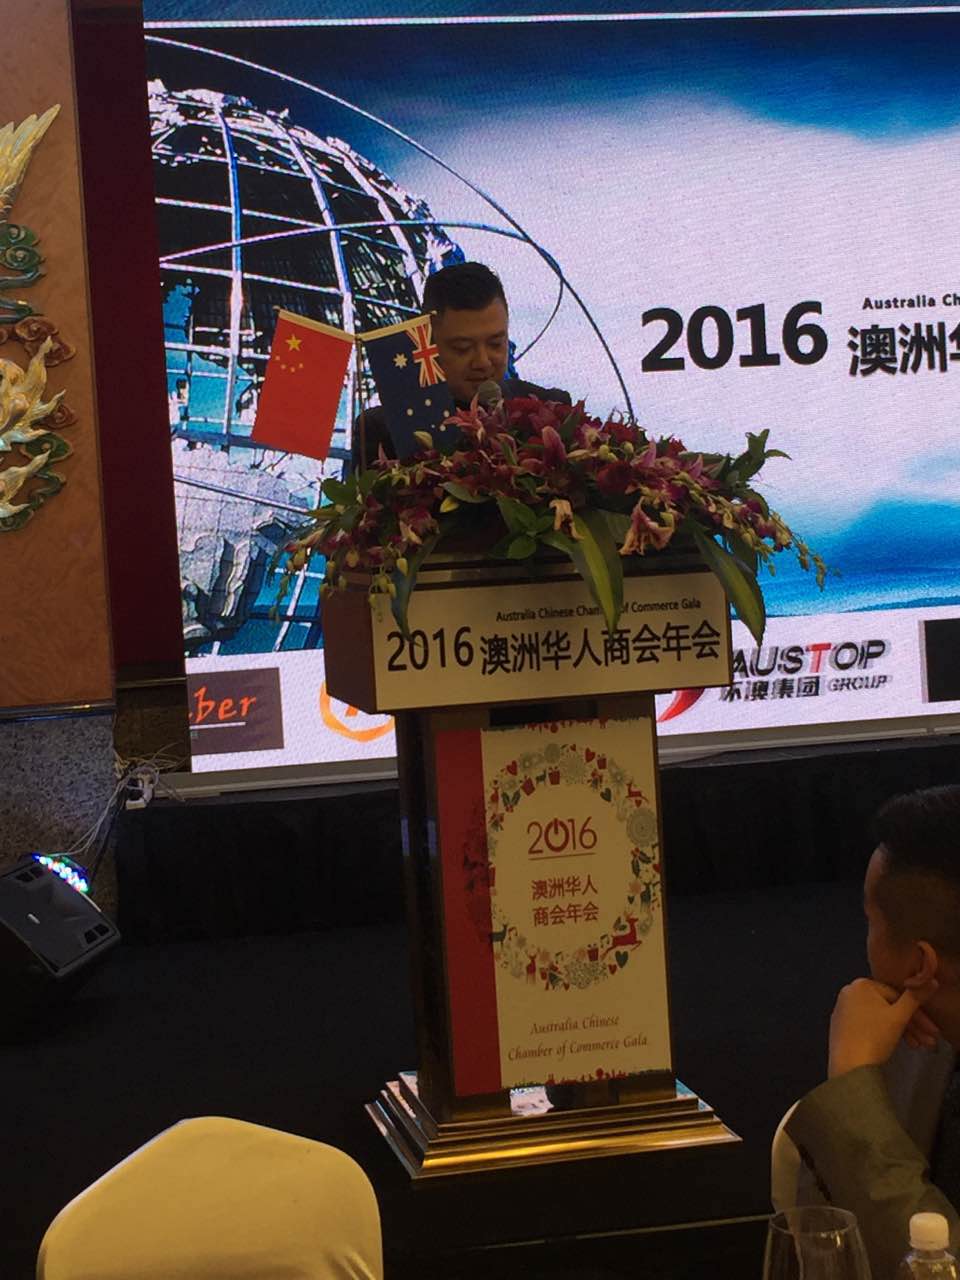 16 2016年澳洲华人商会年会在悉尼盛大举行  开创资源共享合作双赢新局面 